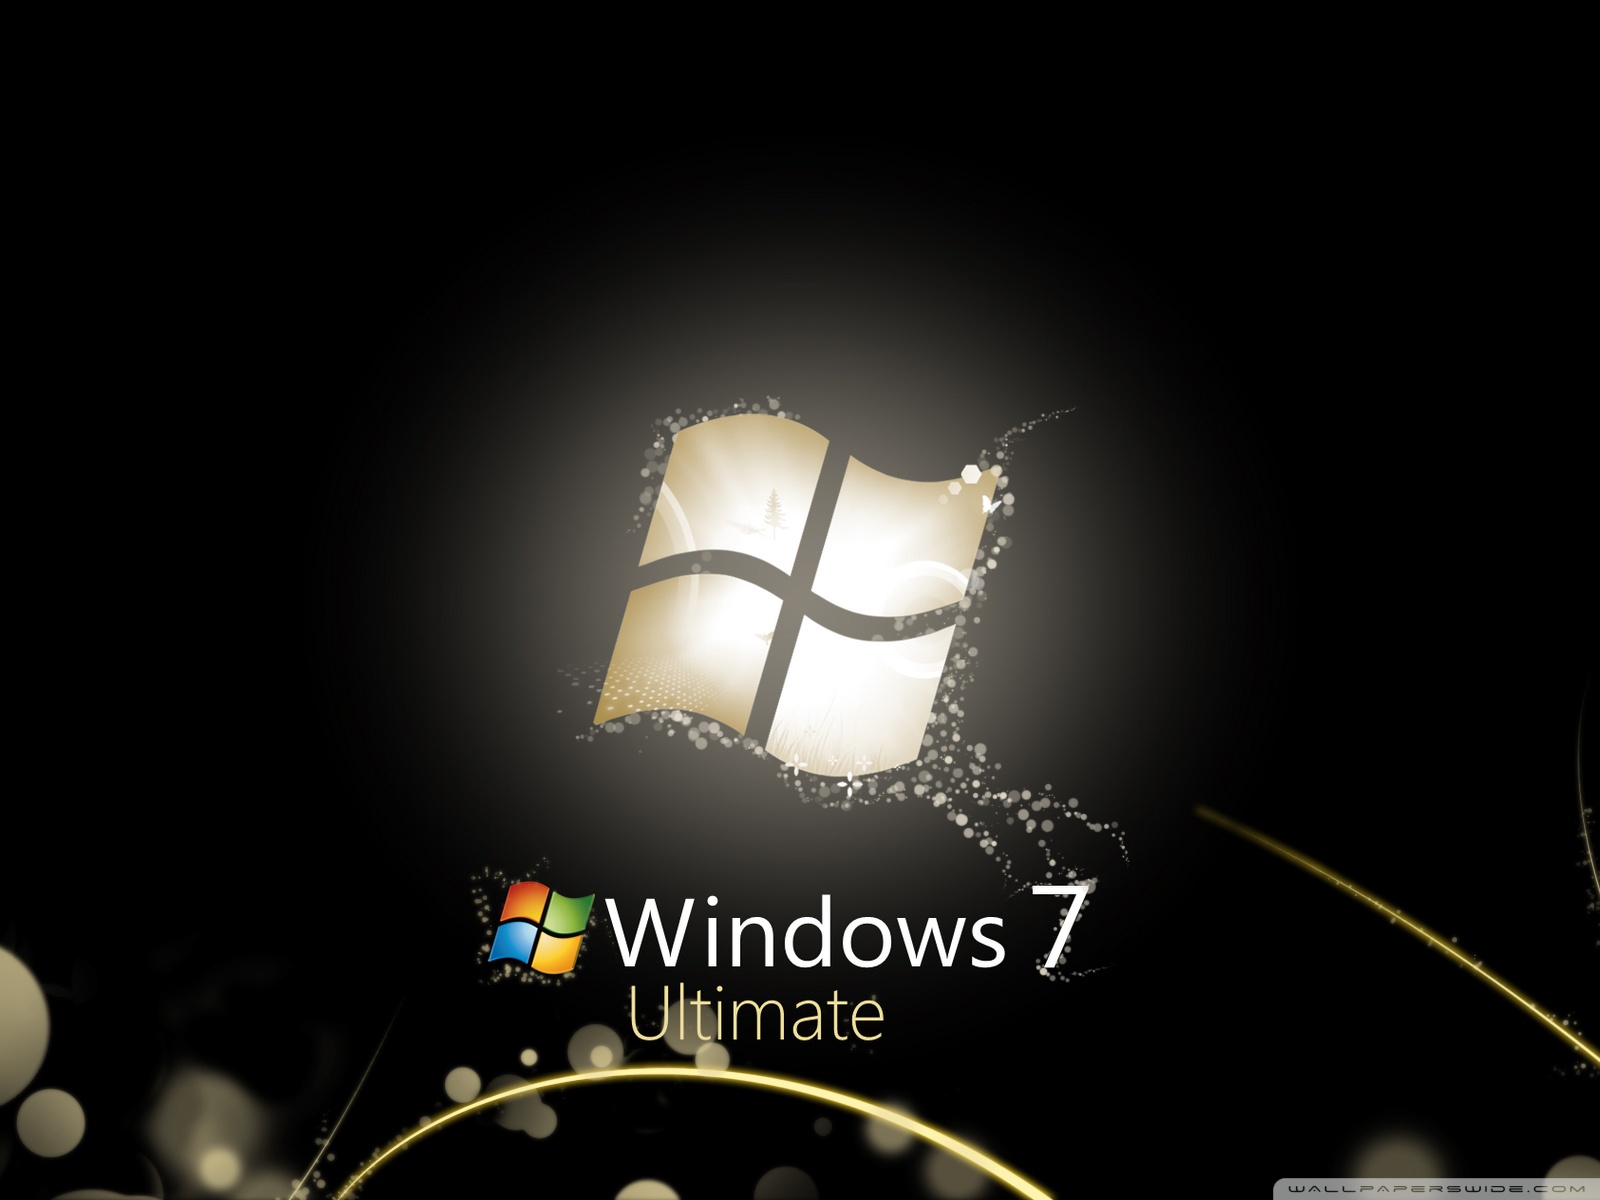 Hình nền desktop đen Windows 7 là một lựa chọn độc đáo và tinh tế, mang đến cho người dùng một không gian làm việc chuyên nghiệp và sang trọng. Hãy tưởng tượng với hình nền đen này, những biểu tượng và hình ảnh màu sắc sẽ được tôn lên rất đẹp mắt và rõ ràng trên màn hình. Hãy đắm mình trong tổng thể trang trí đơn giản mà đầy quyền uy của hình nền desktop đen Windows 7.